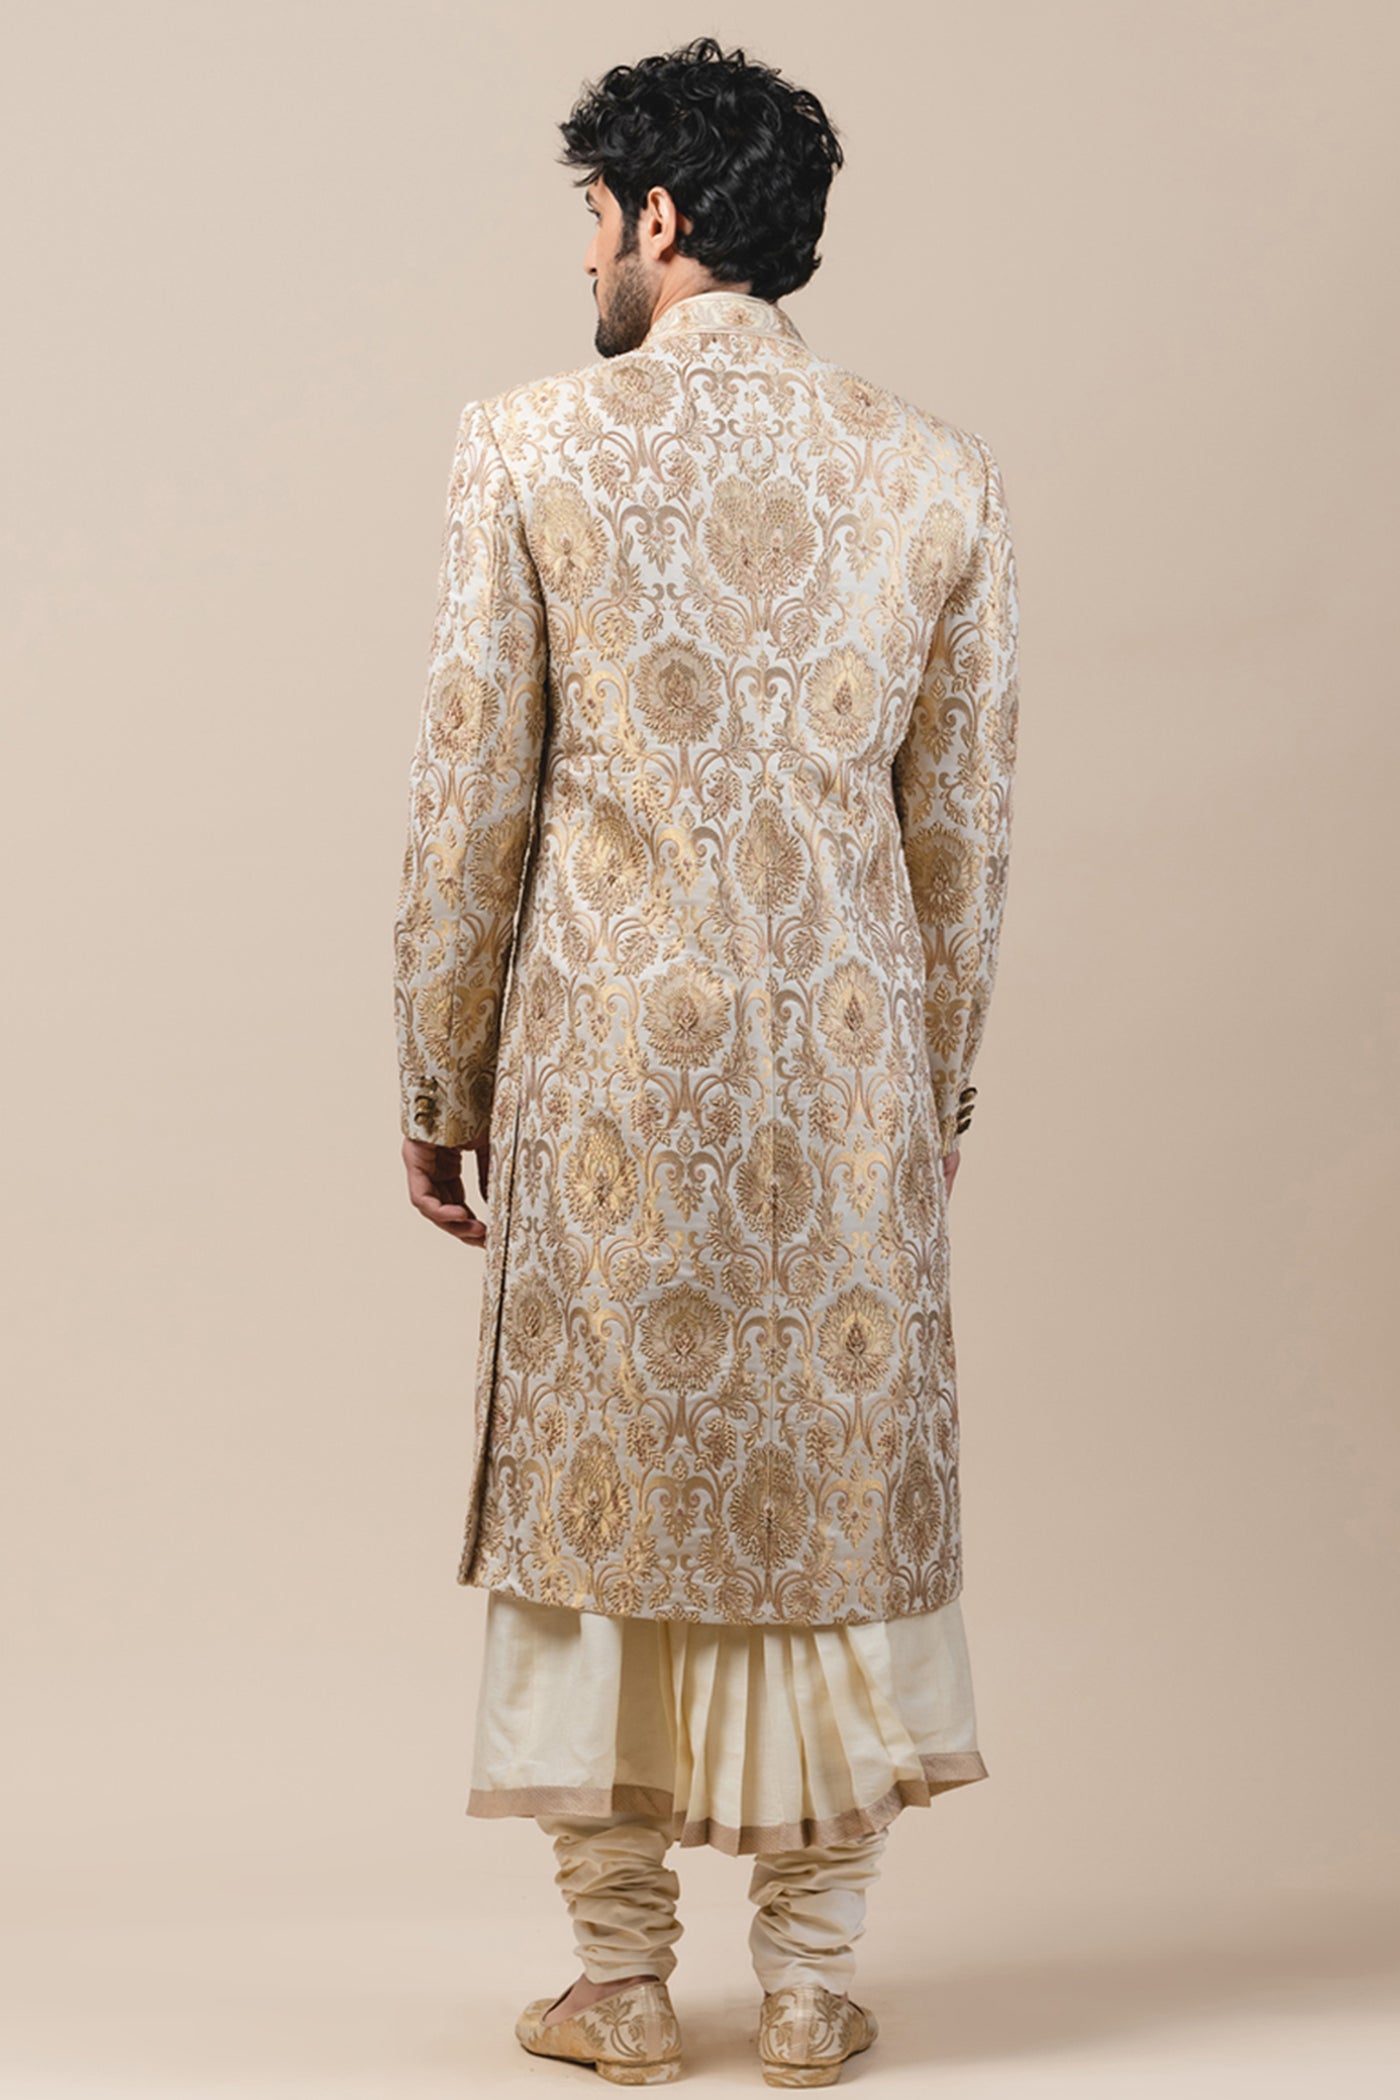 Tarun Tahiliani menswear Brocade Sherwani gold ivory white wedding groom bridal indian designer wear online shopping melange singapore